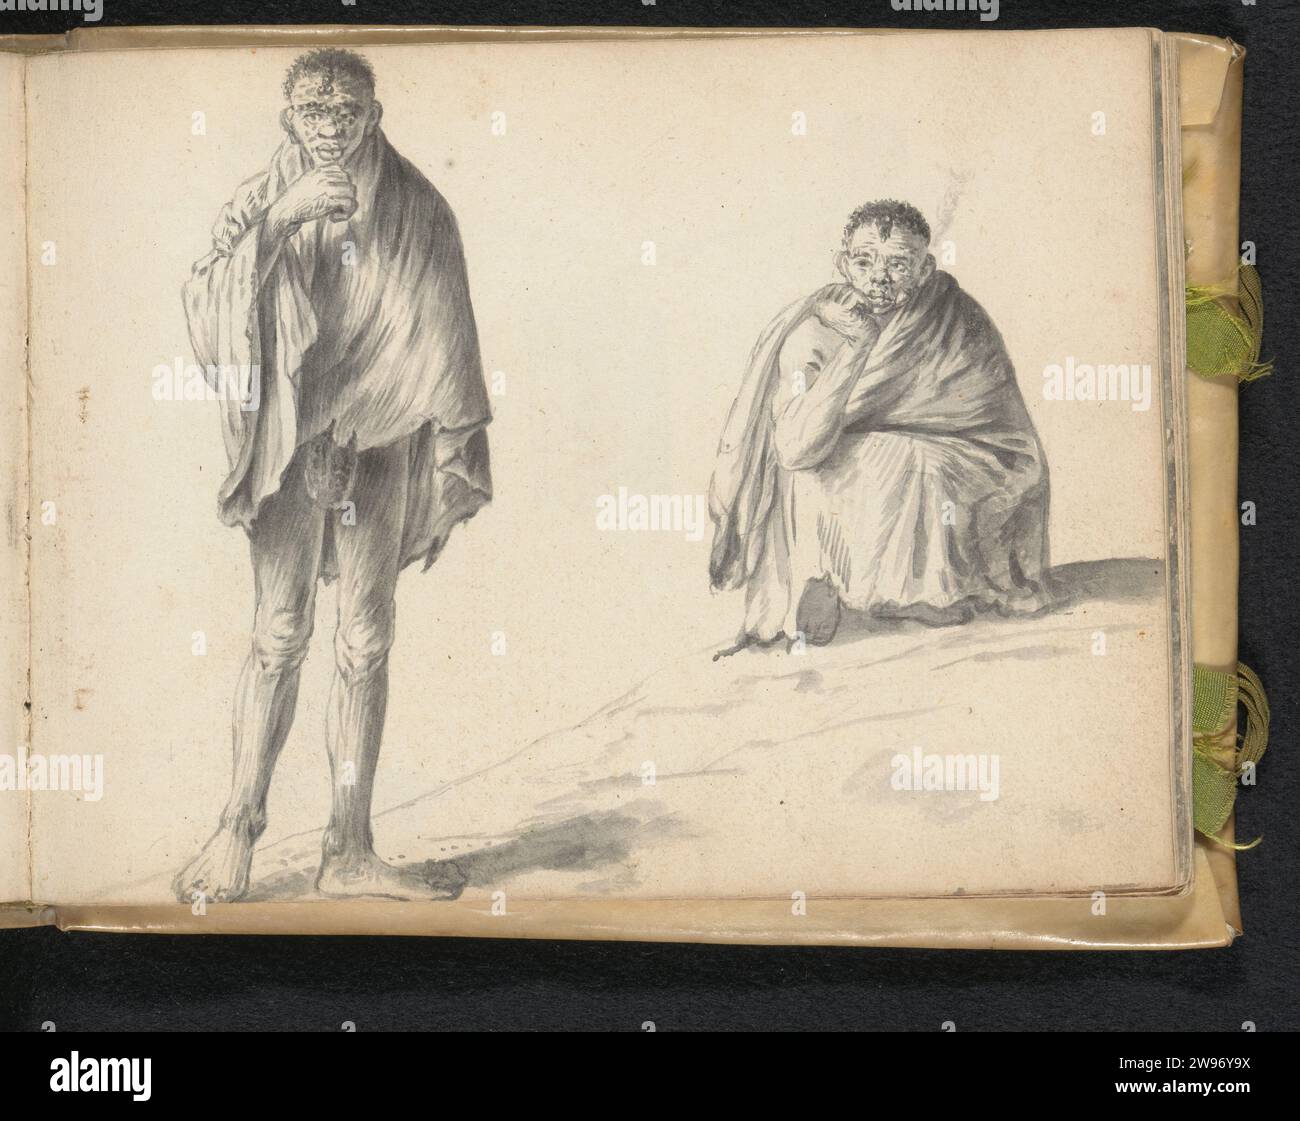 Deux hommes Khoisan sud-africains ; l'un fume une pipe, Esaias Bourse, 1662 le dessinateur a signé des taches sur le visage de l'homme de gauche, peut-être qu'il a de l'albinisme. L'homme porte un petit débarbouillette, et un large morceau autour de ses épaules et du haut du corps qui descend sur ses hanches. Il peut s'agir d'un tissu de textile aux bords effilochés, ou de la couverture en cuir traditionnelle du Khoisan. Sa couverture croisée est visible sous le manteau. L'homme de droite s'accroupe sur la pente. Mis à part l'épaule et le bras droits, il est complètement habillé d'un large manteau (textile ou peau d'animal) sur ses genoux. Ses deux pieds A. Banque D'Images